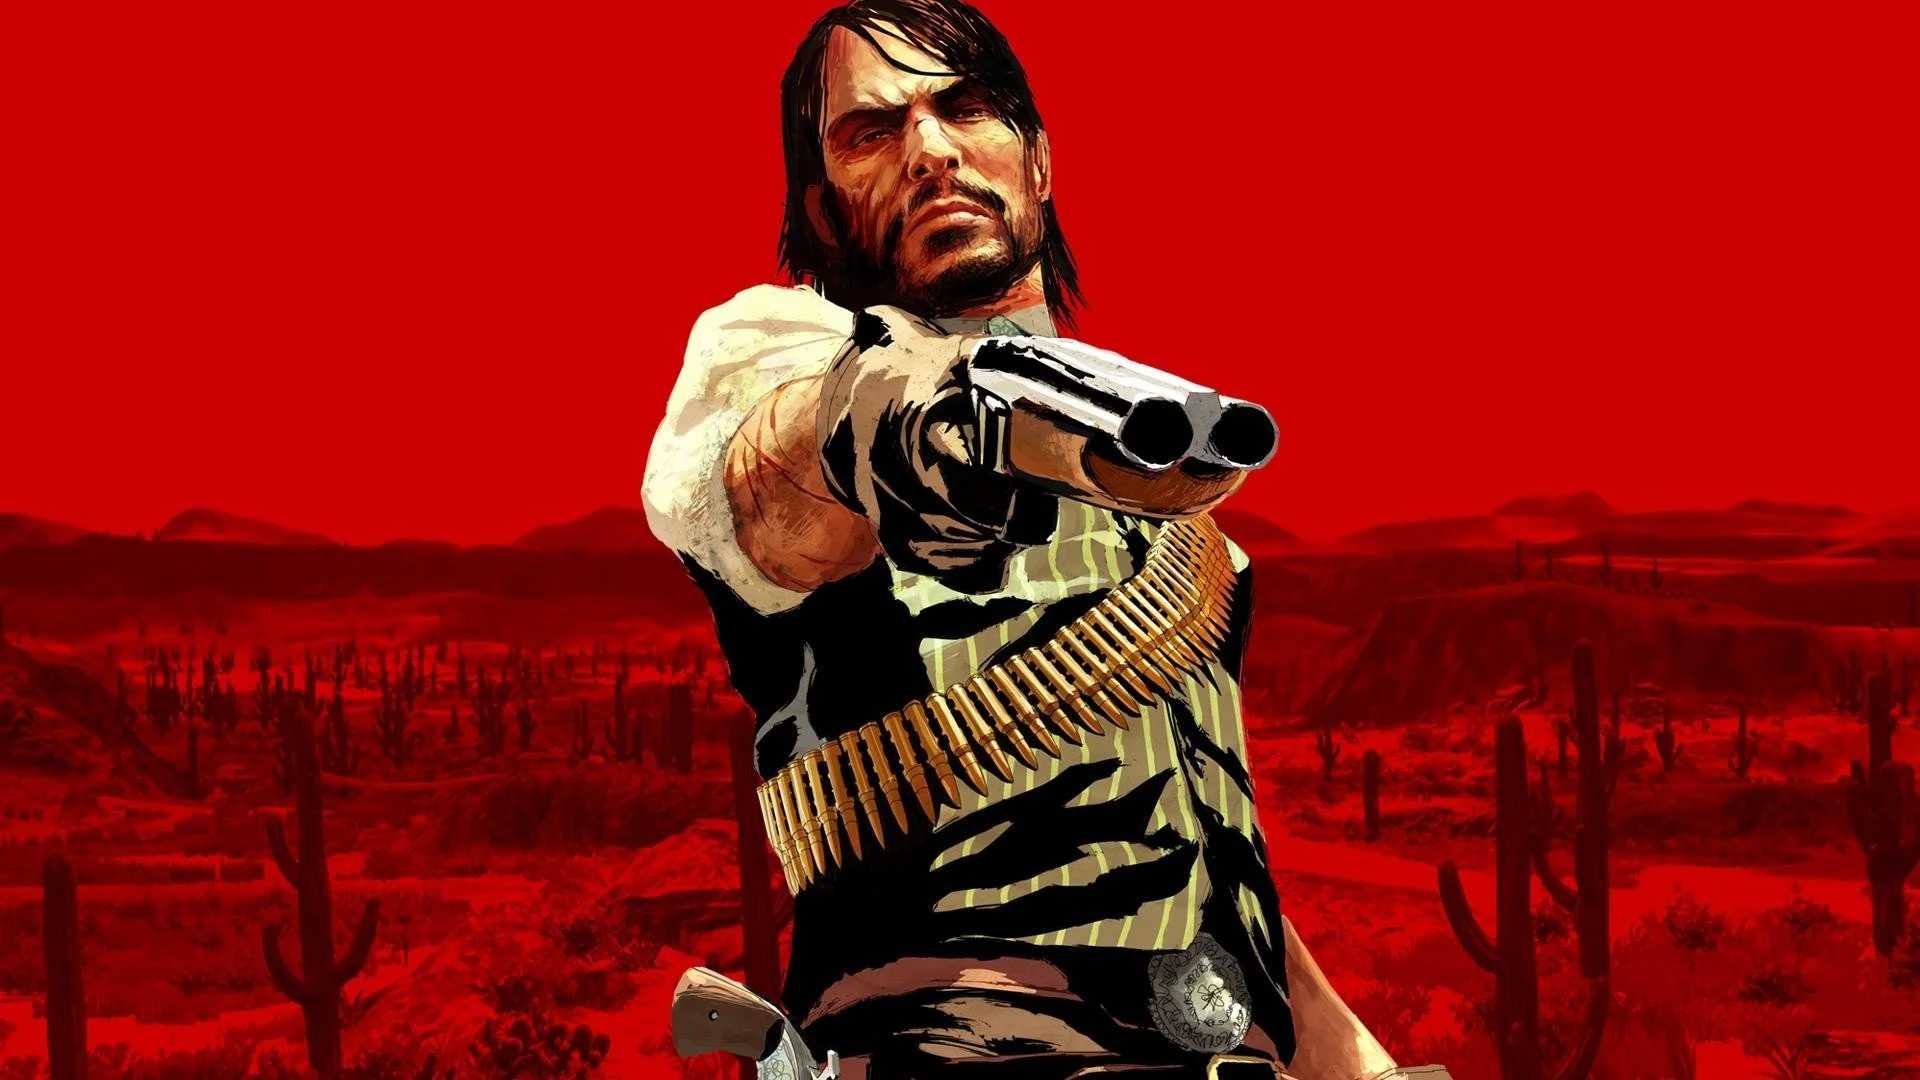 El precio de ‘Red Dead Redemption’ es justo, según Take Two